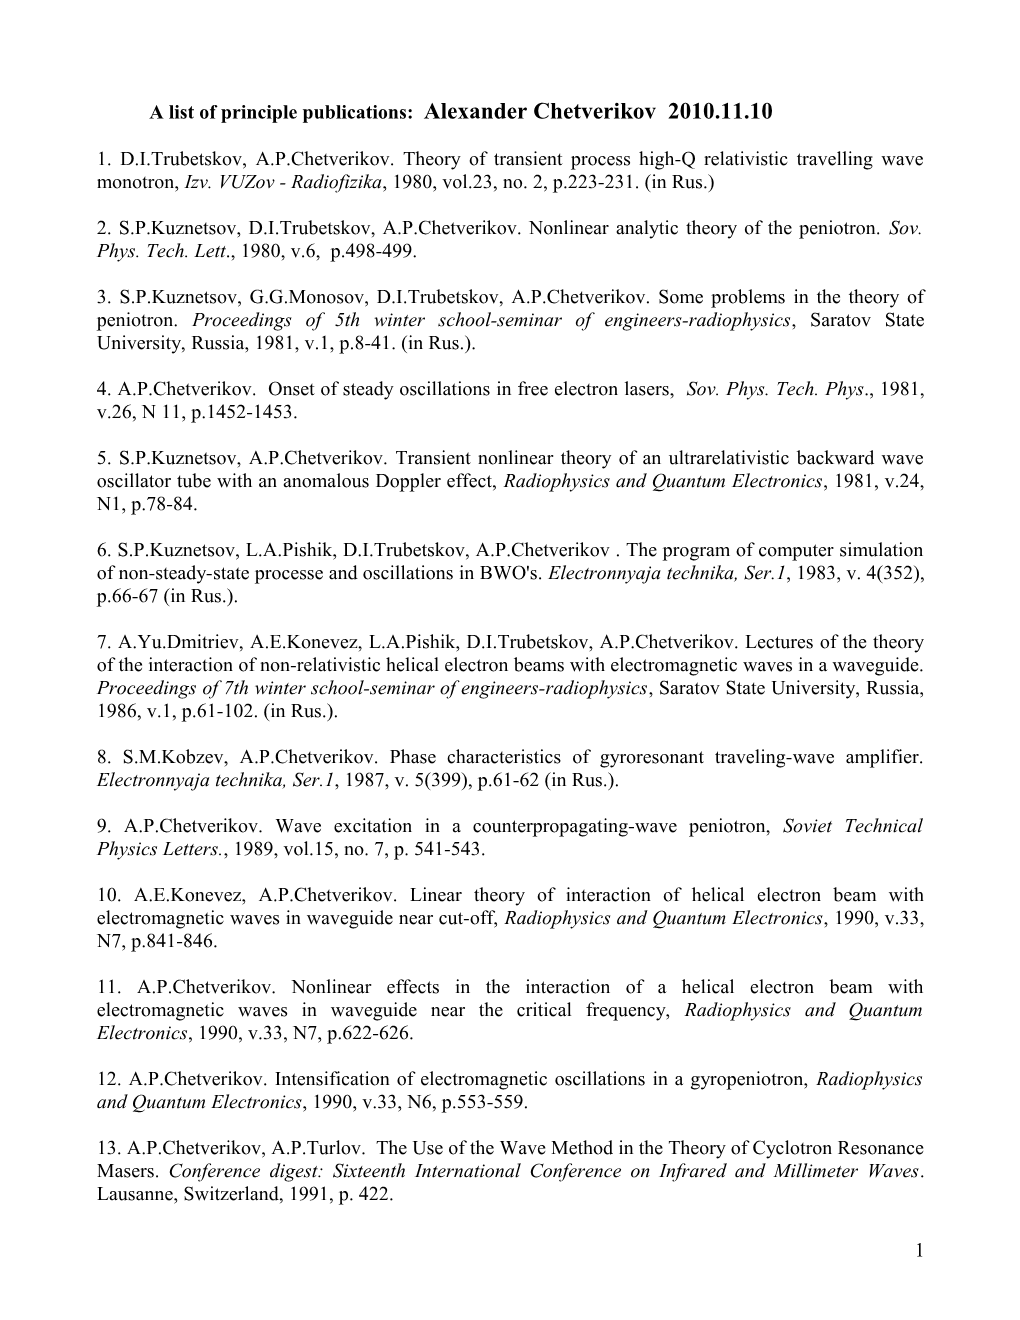 A List of Principle Publications: Alexander Chetverikov 2010.11.10